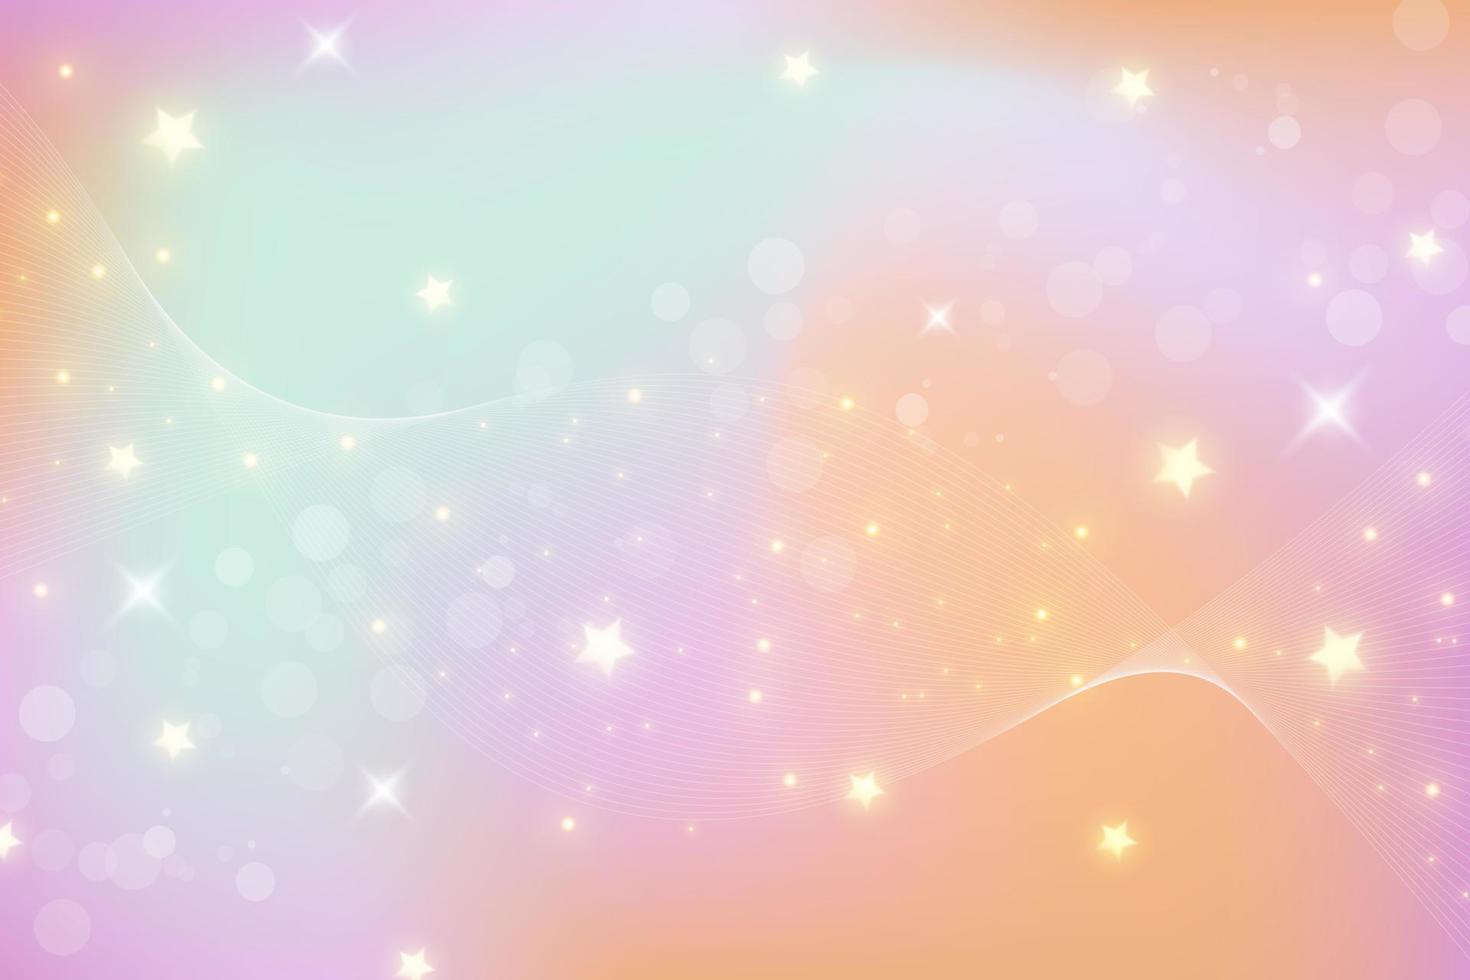 regnbåge fantasy bakgrund. holografisk illustration i pastellfärger. söt tecknad tjejig bakgrund. ljus mångfärgad himmel med stjärnor och hjärtan. vektor. vektor